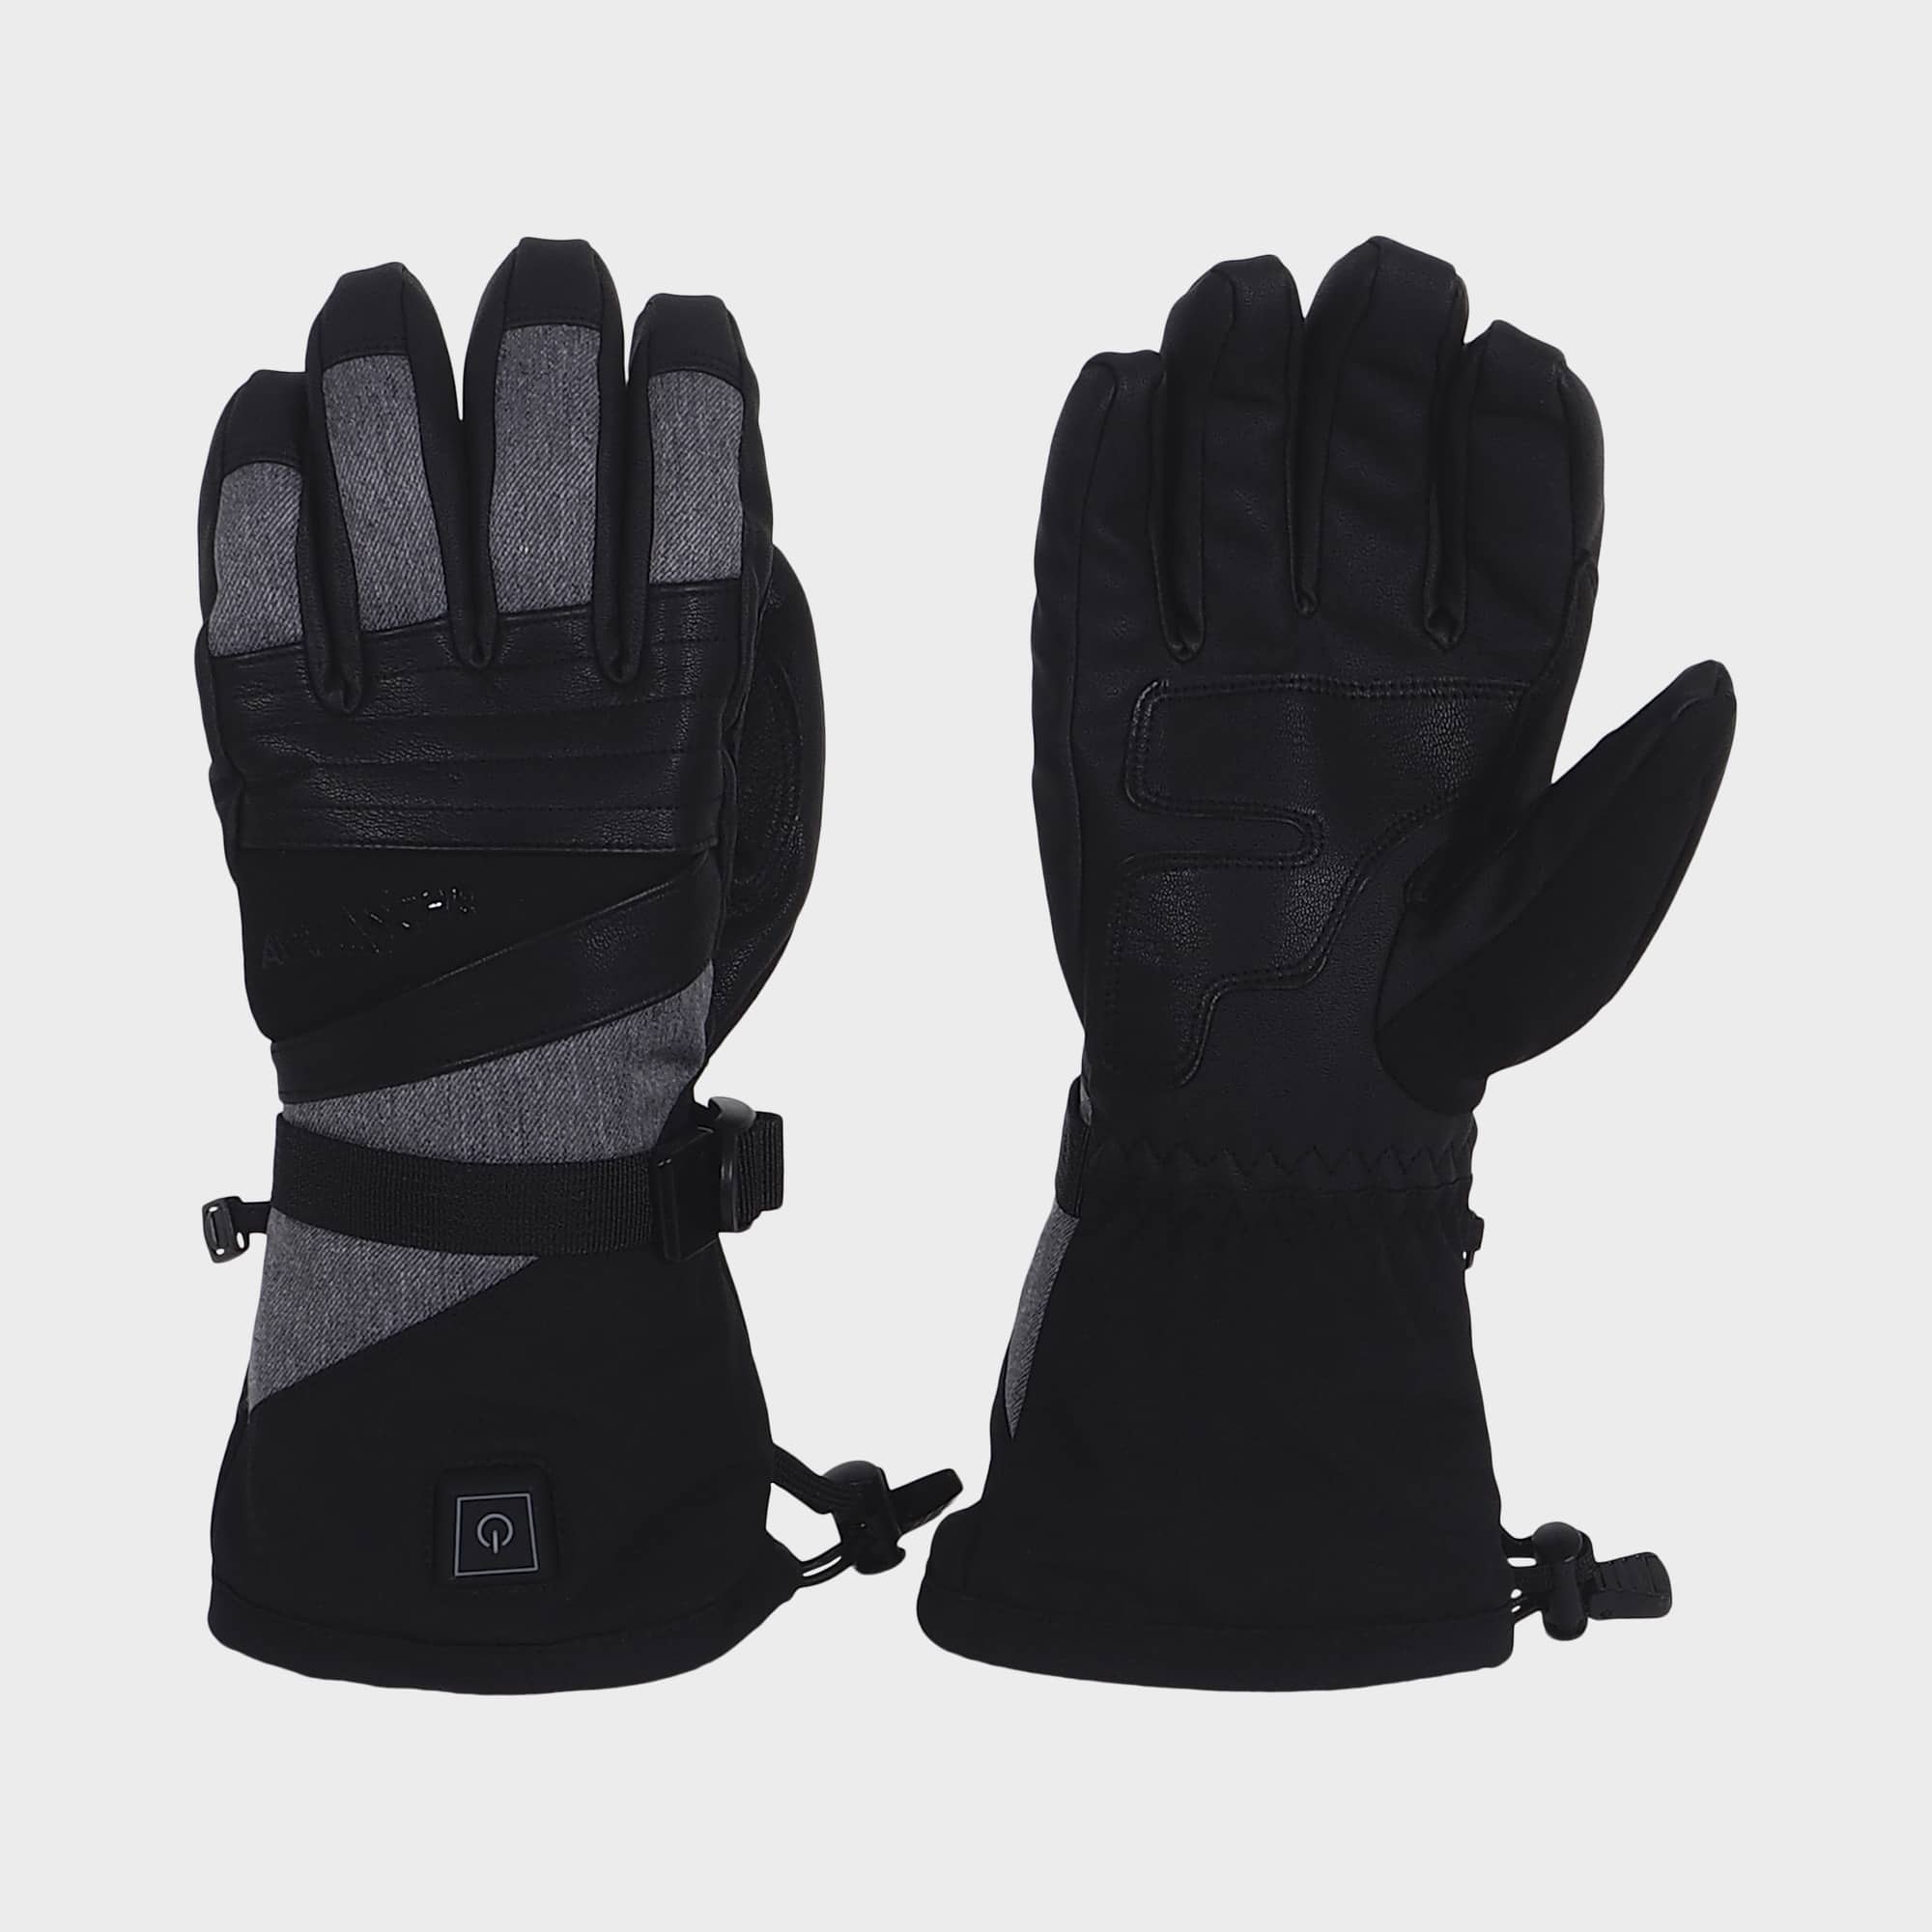 Heated Gloves - Men